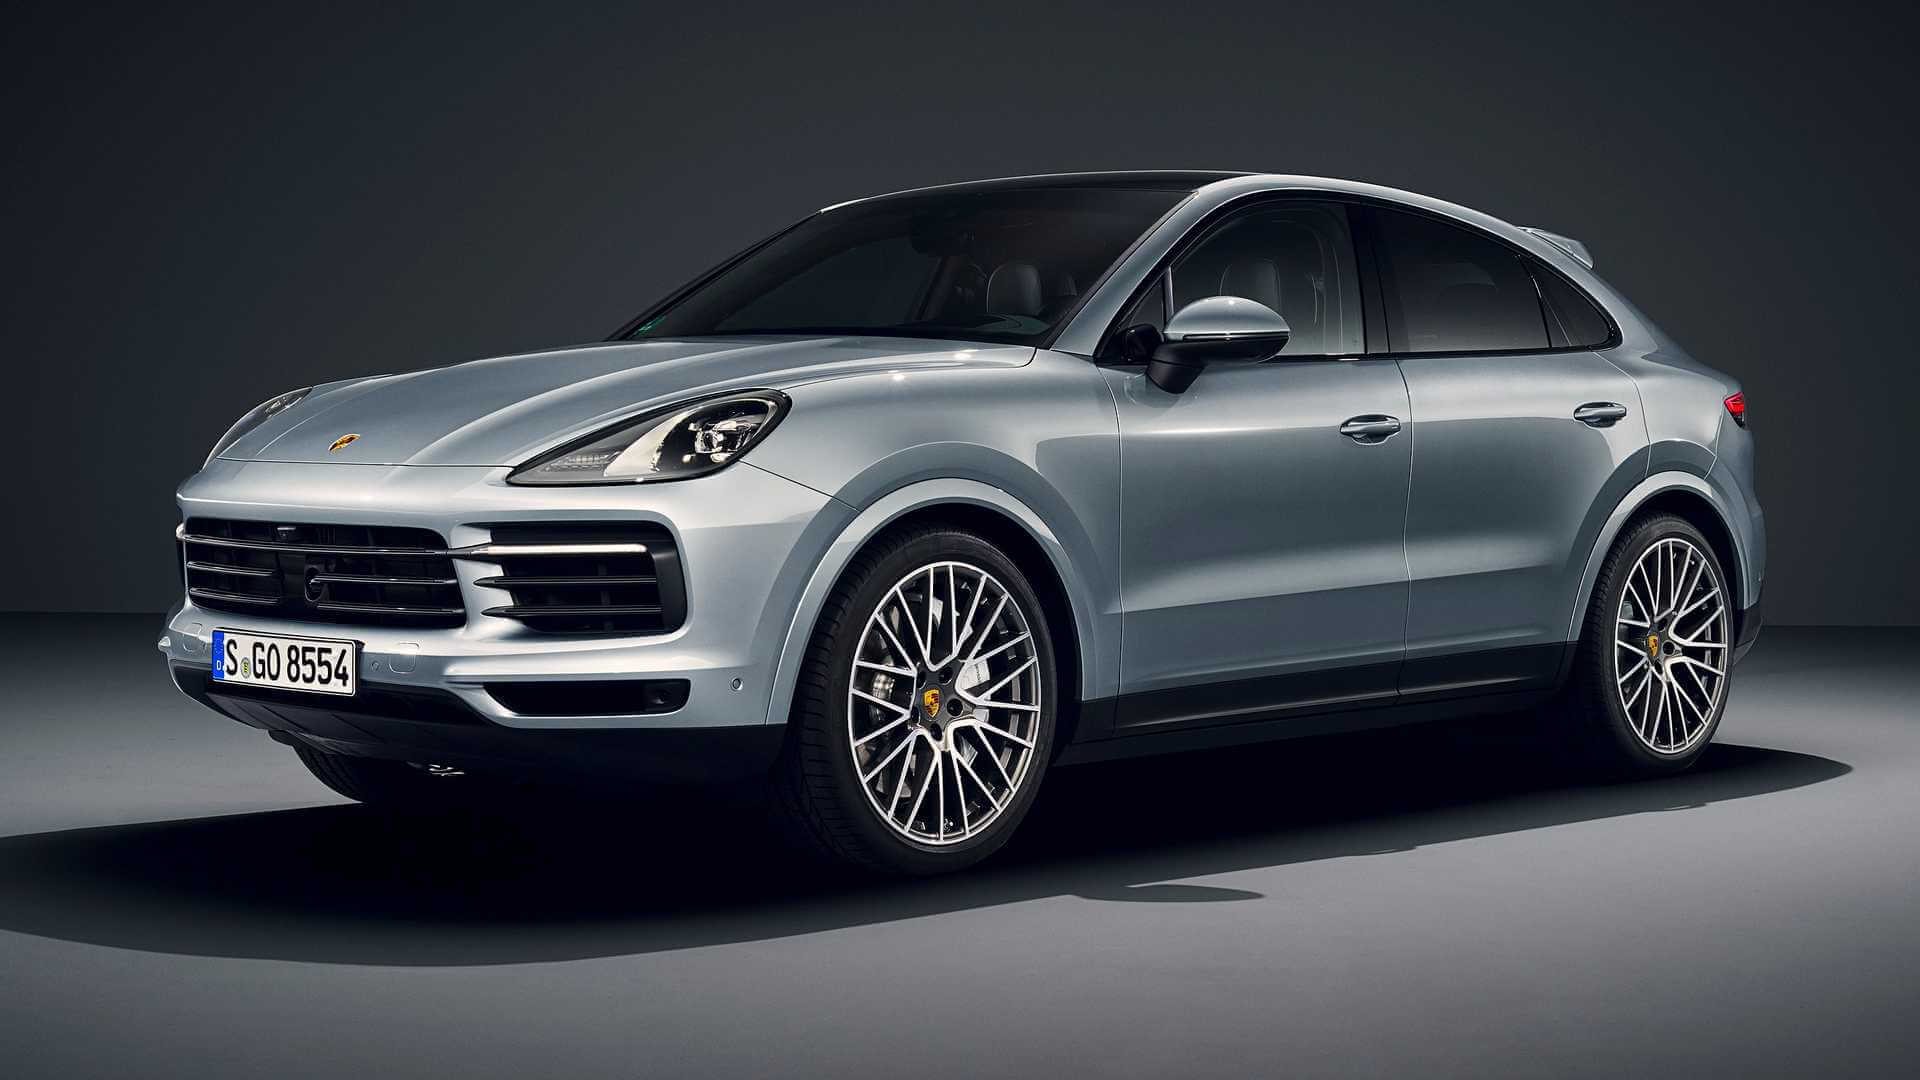 Νέα έκδοση κινητήρα για την κουπέ Porsche Cayenne [pics]